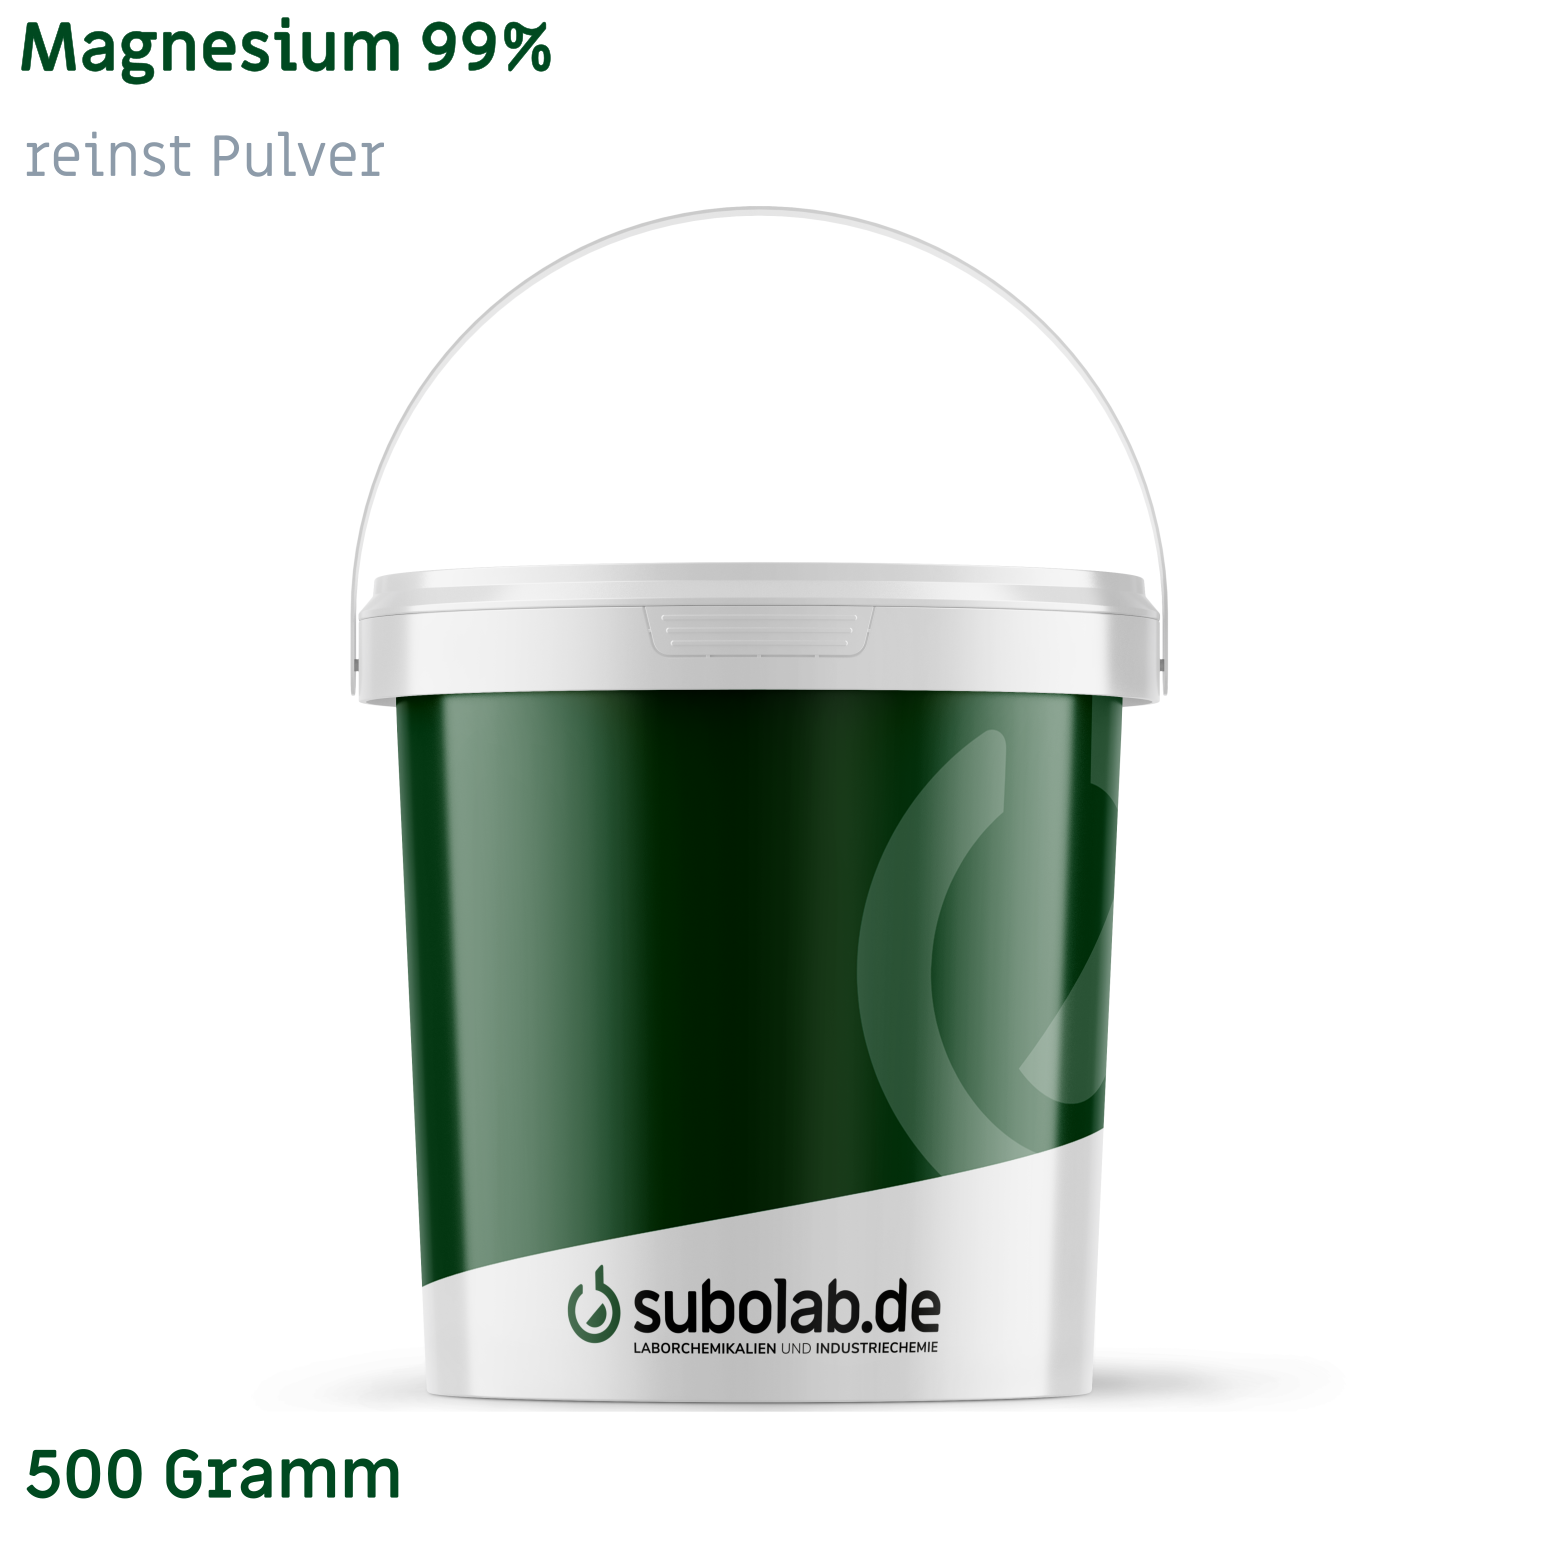 Bild von Magnesium 99% reinst Pulver (500 Gramm)